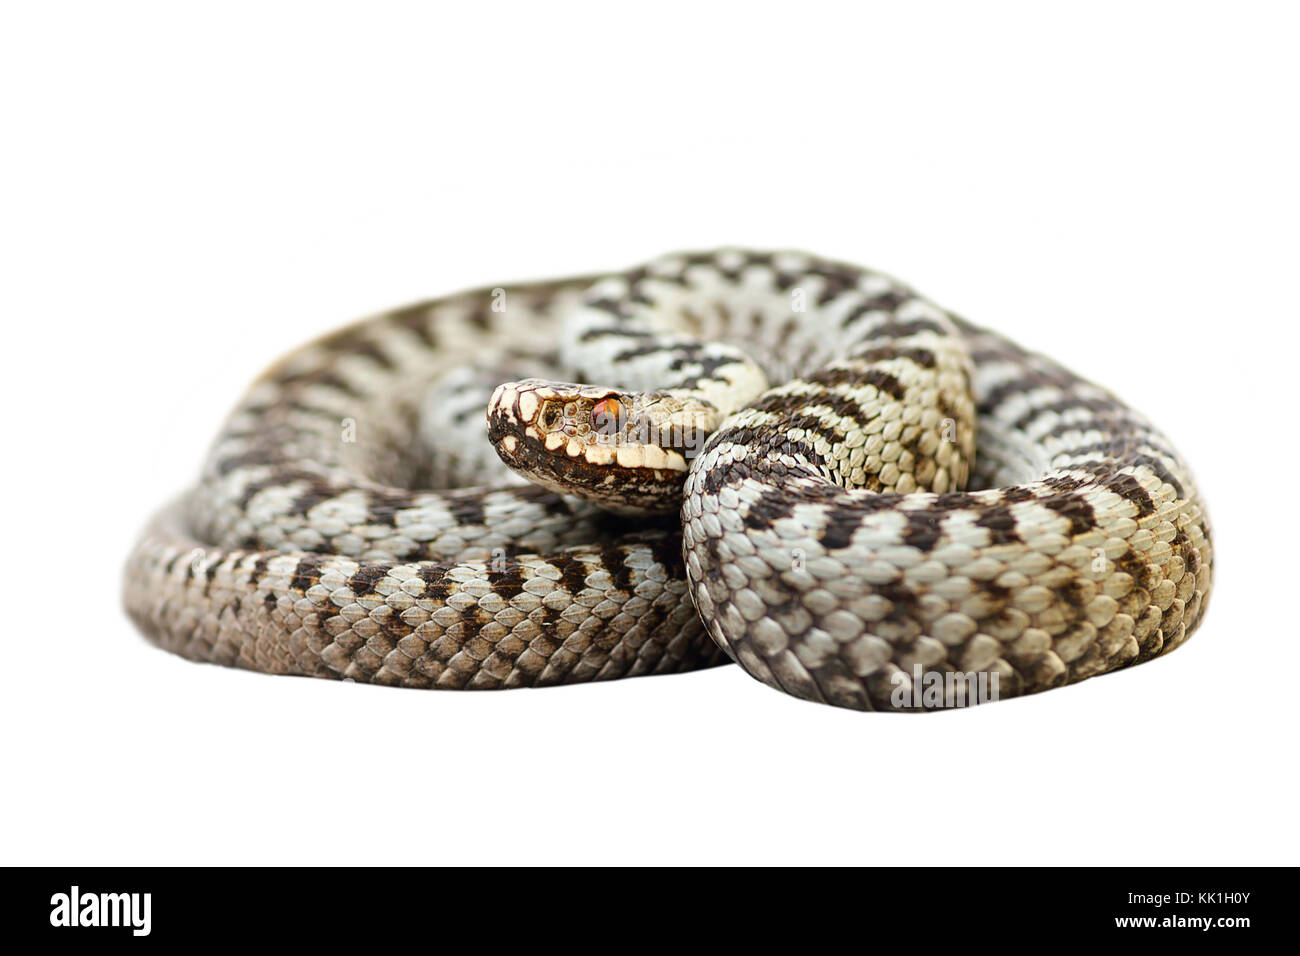 Europeo di serpenti velenosi i comuni attraversati viper ( Vipera berus ); animale selvatico ( rettile, piena lunghezza ) isolate su sfondo bianco, pronto per voi Foto Stock